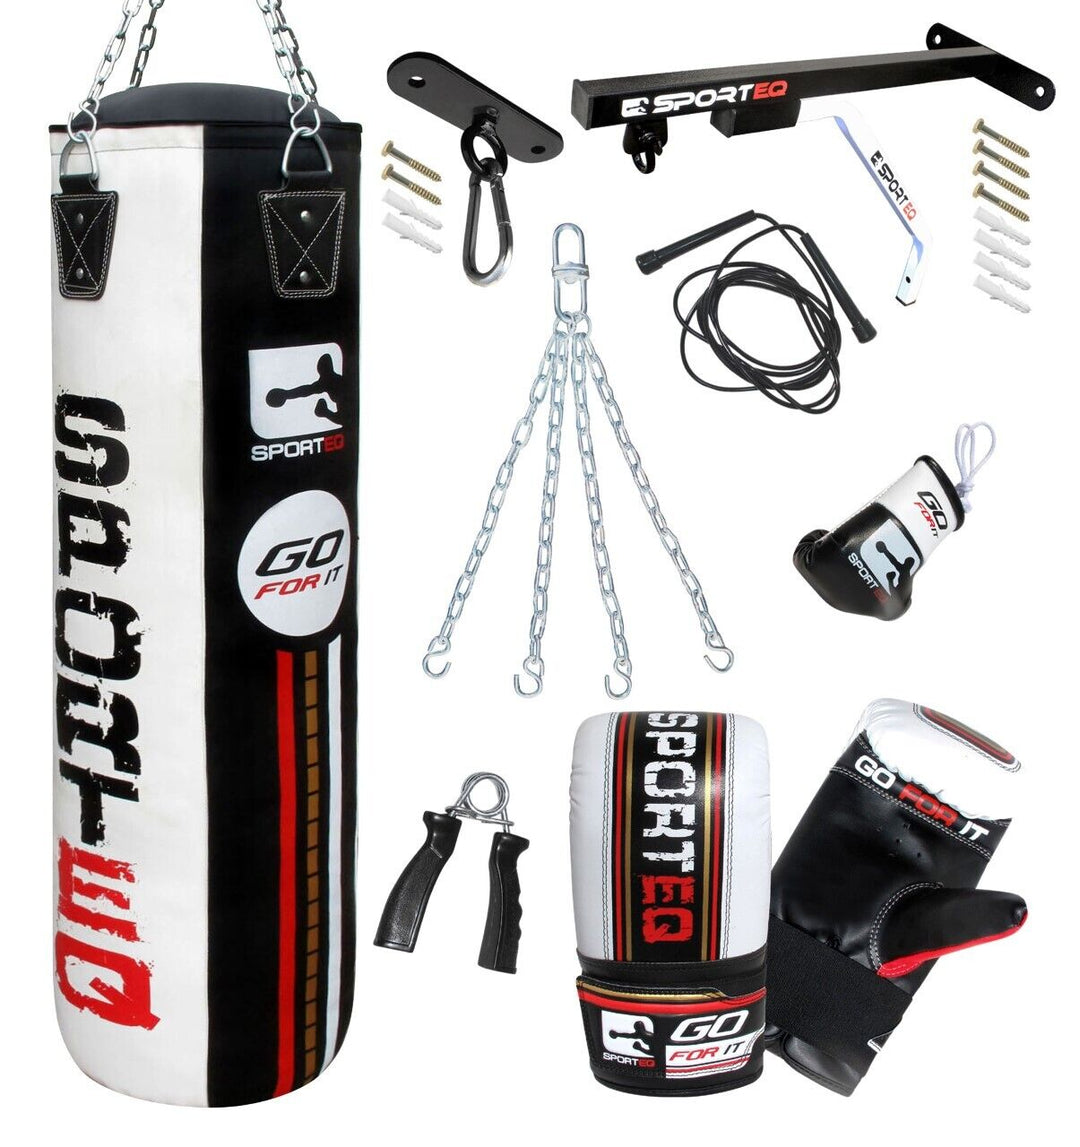 3Ft/4Ft/5Ft Punchbag Heavy Filled, Sporteq Boxing Sets,Gym Quality Pro Bag Combo